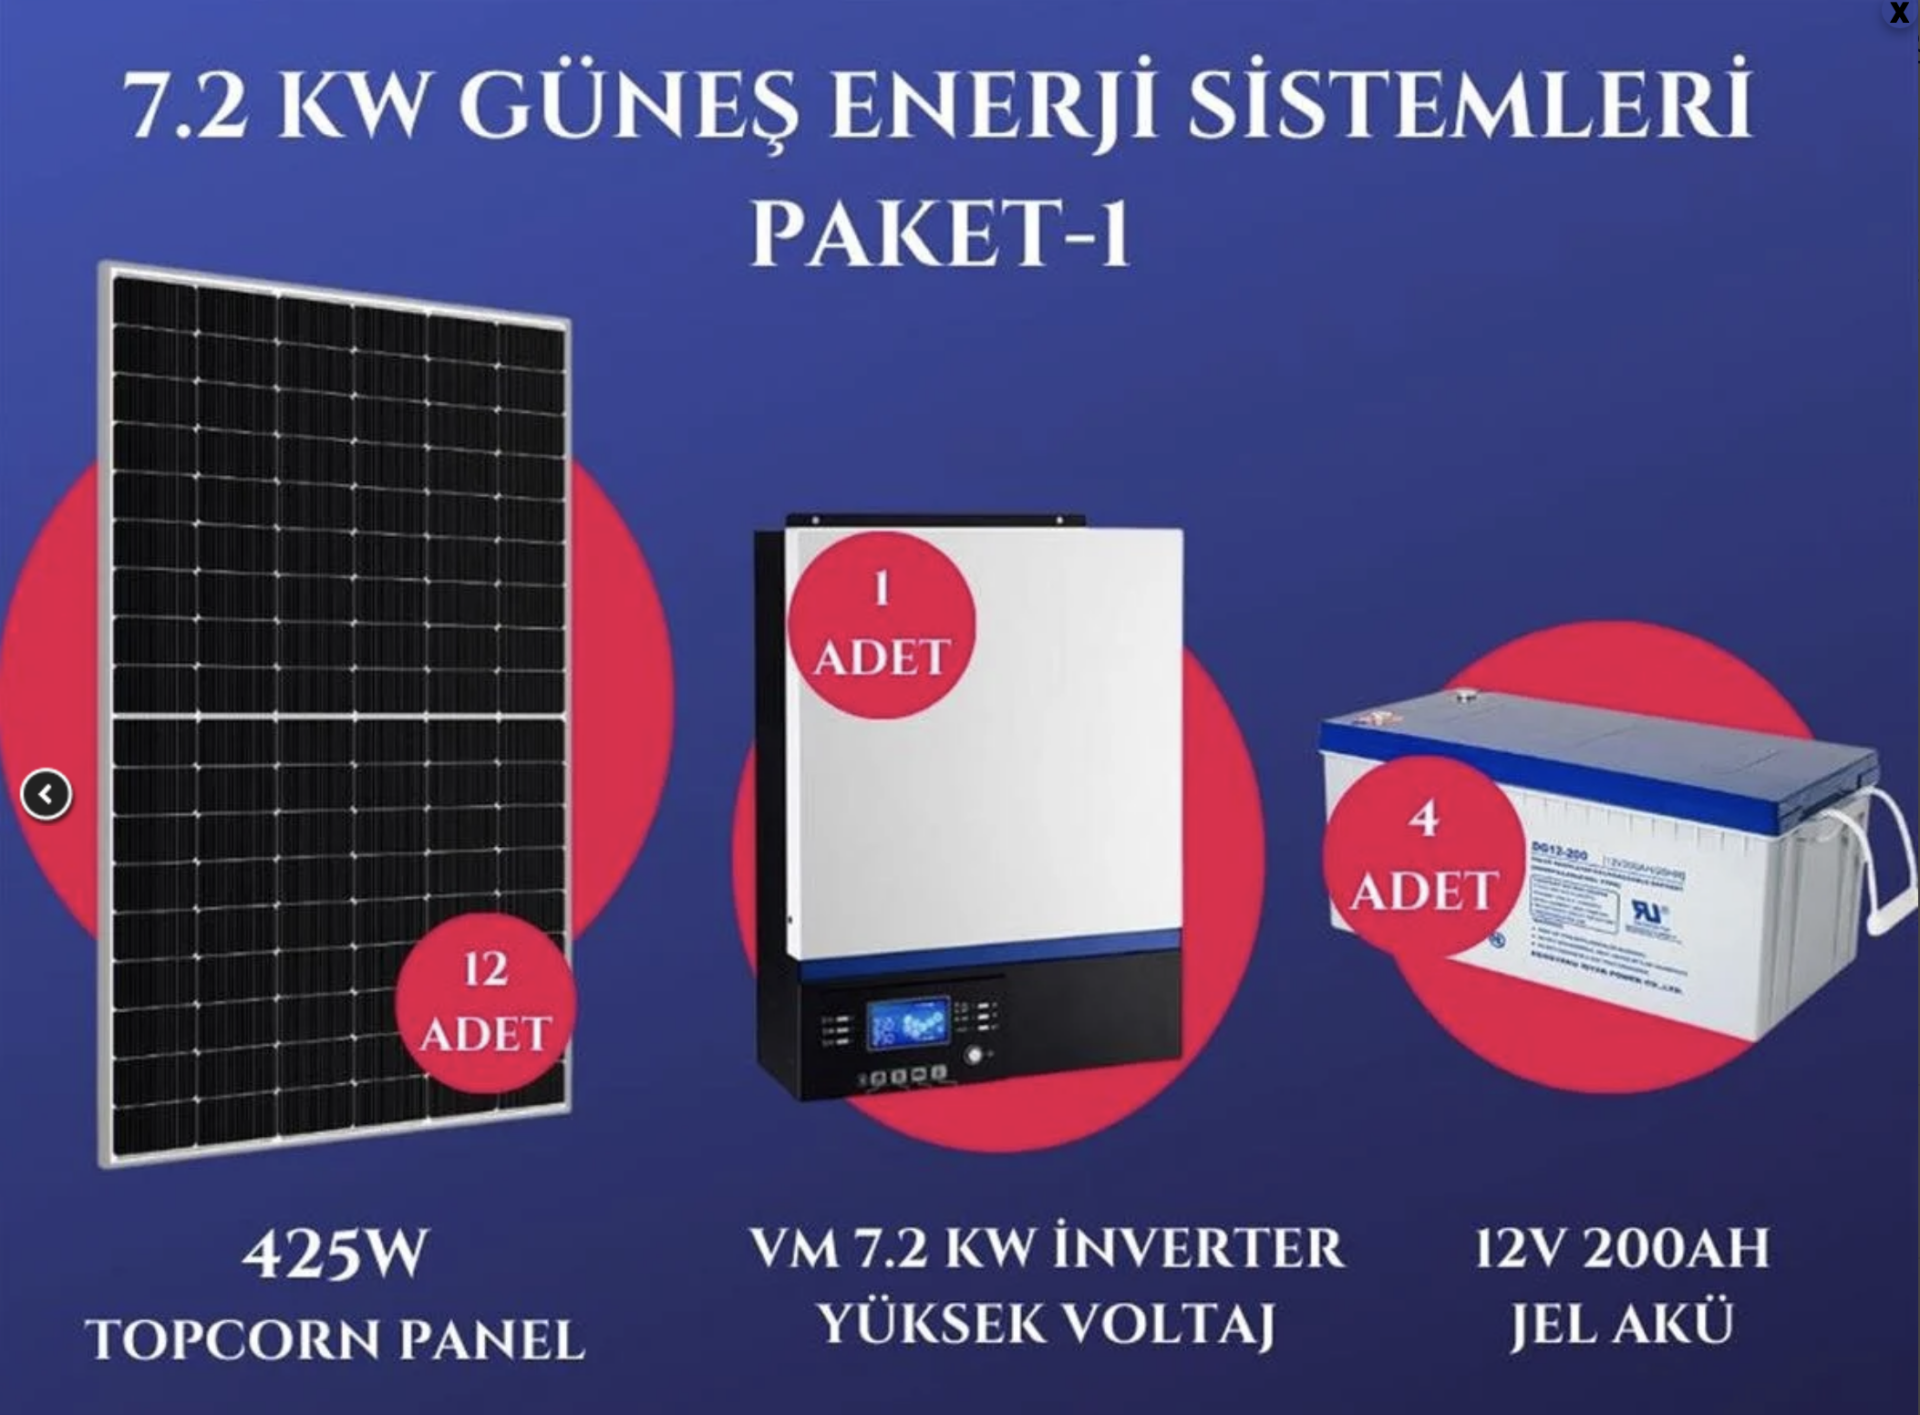 7.2Kw Güneş Enerji Sistemleri Paketi-1